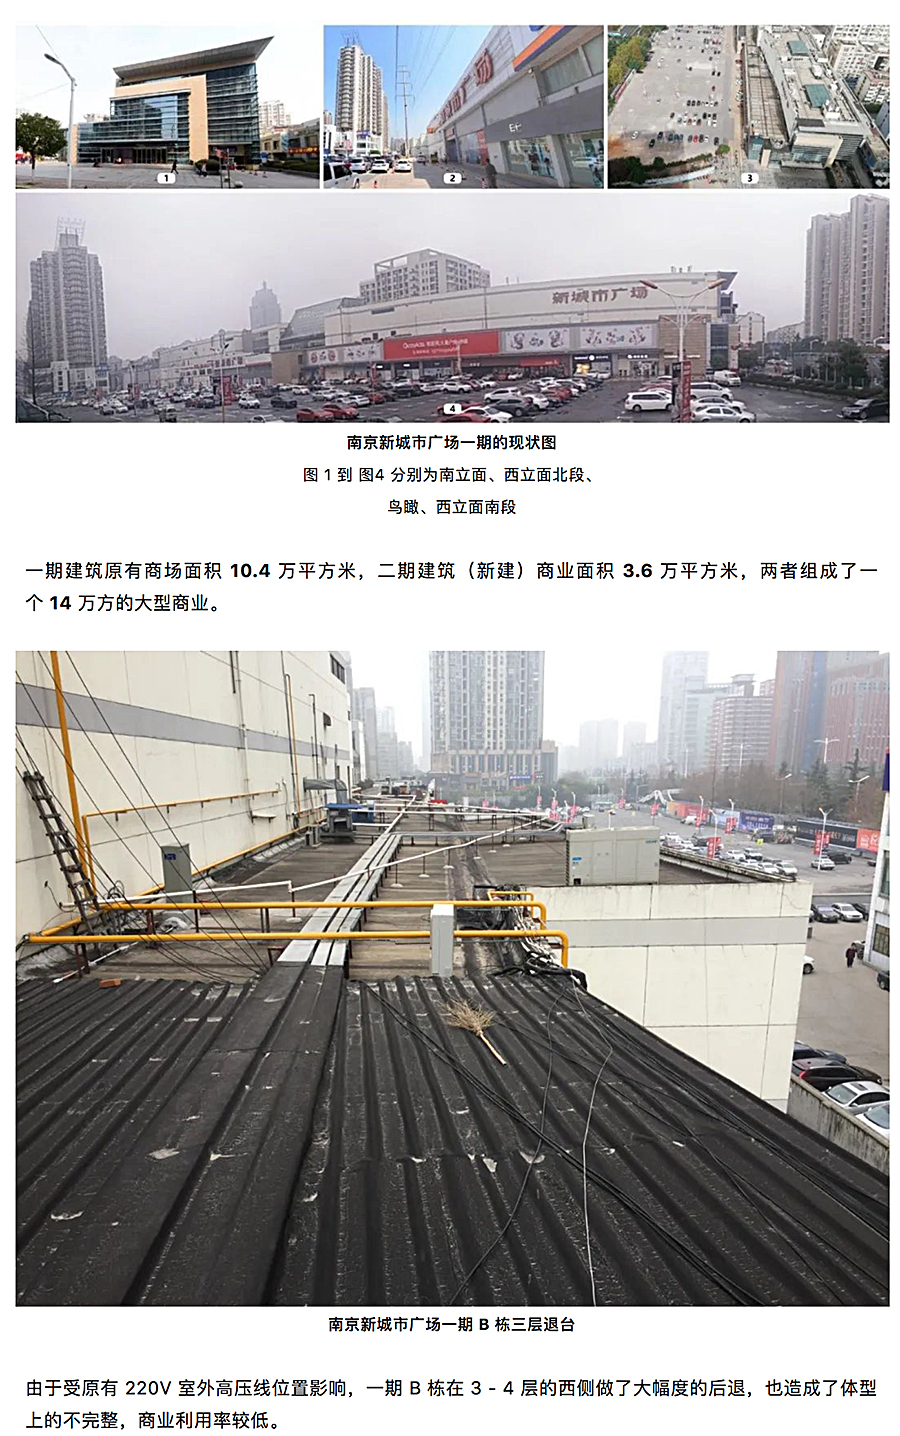 与时俱进的升级改造-_-南京龙江新城市广场一期商业改造_0001_图层-2.jpg